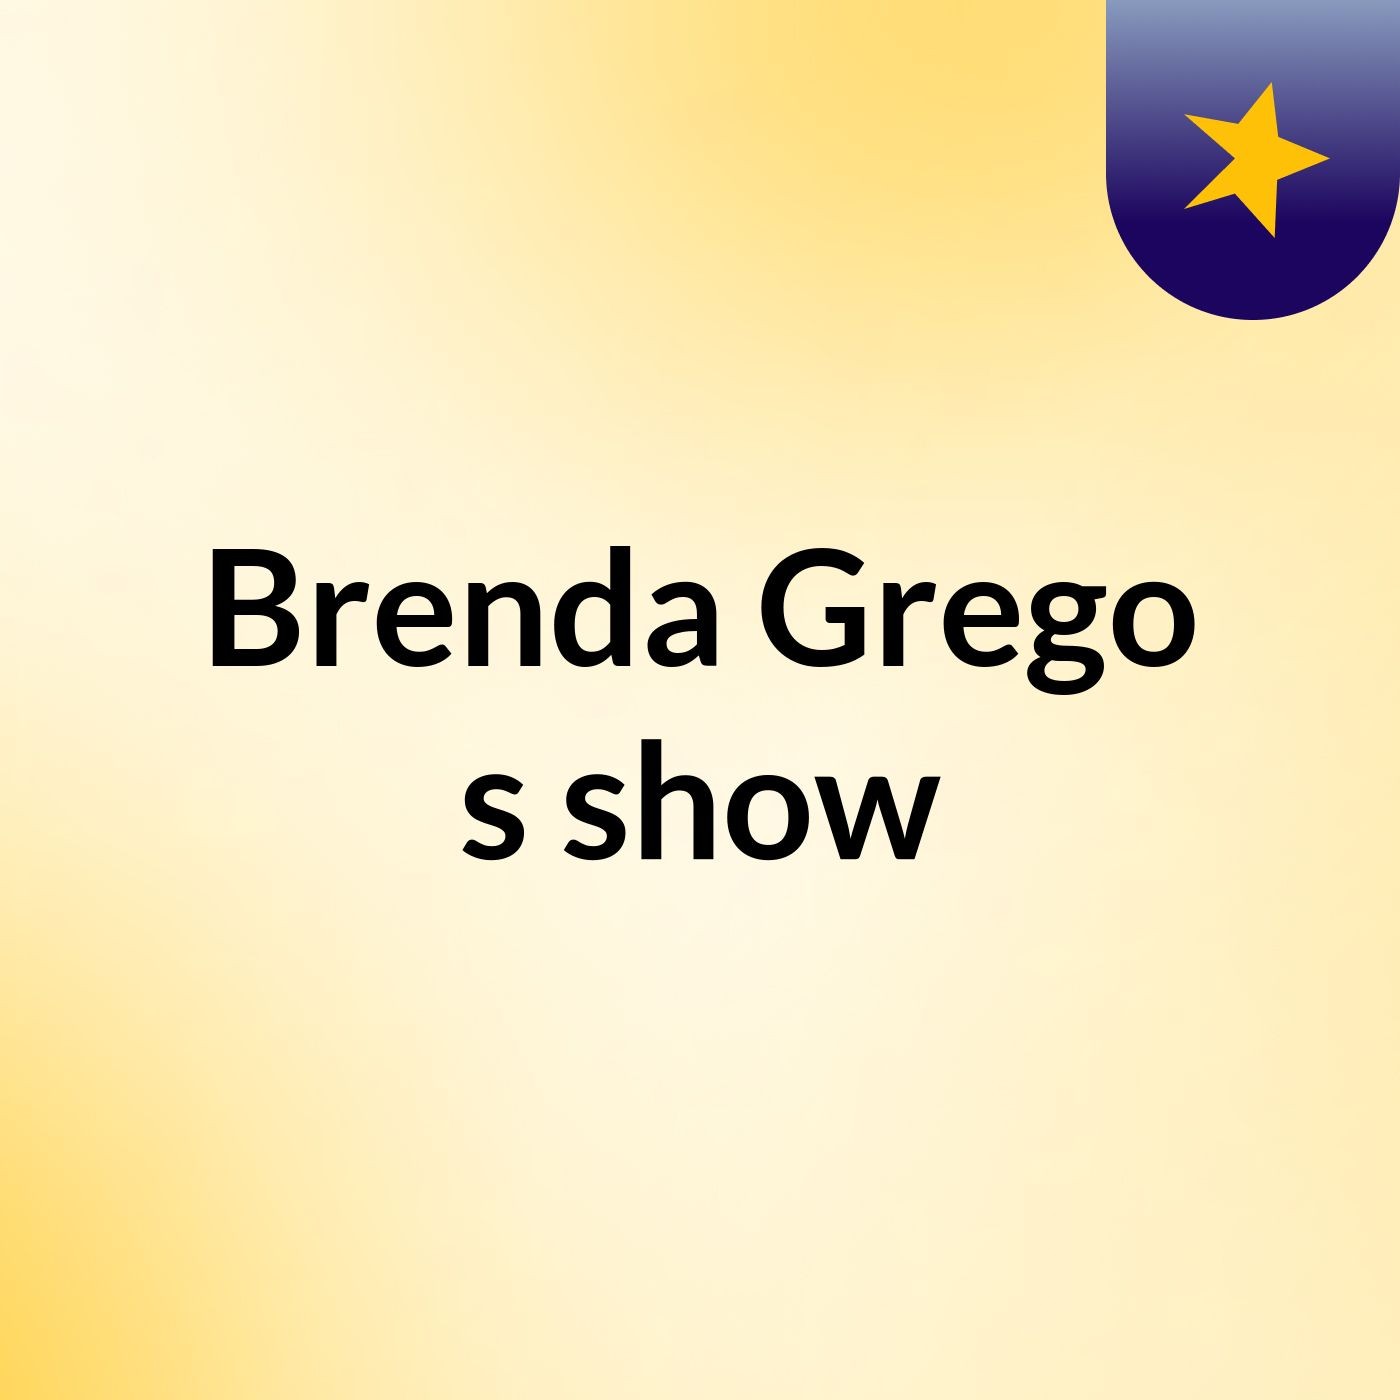 Brenda Grego's show